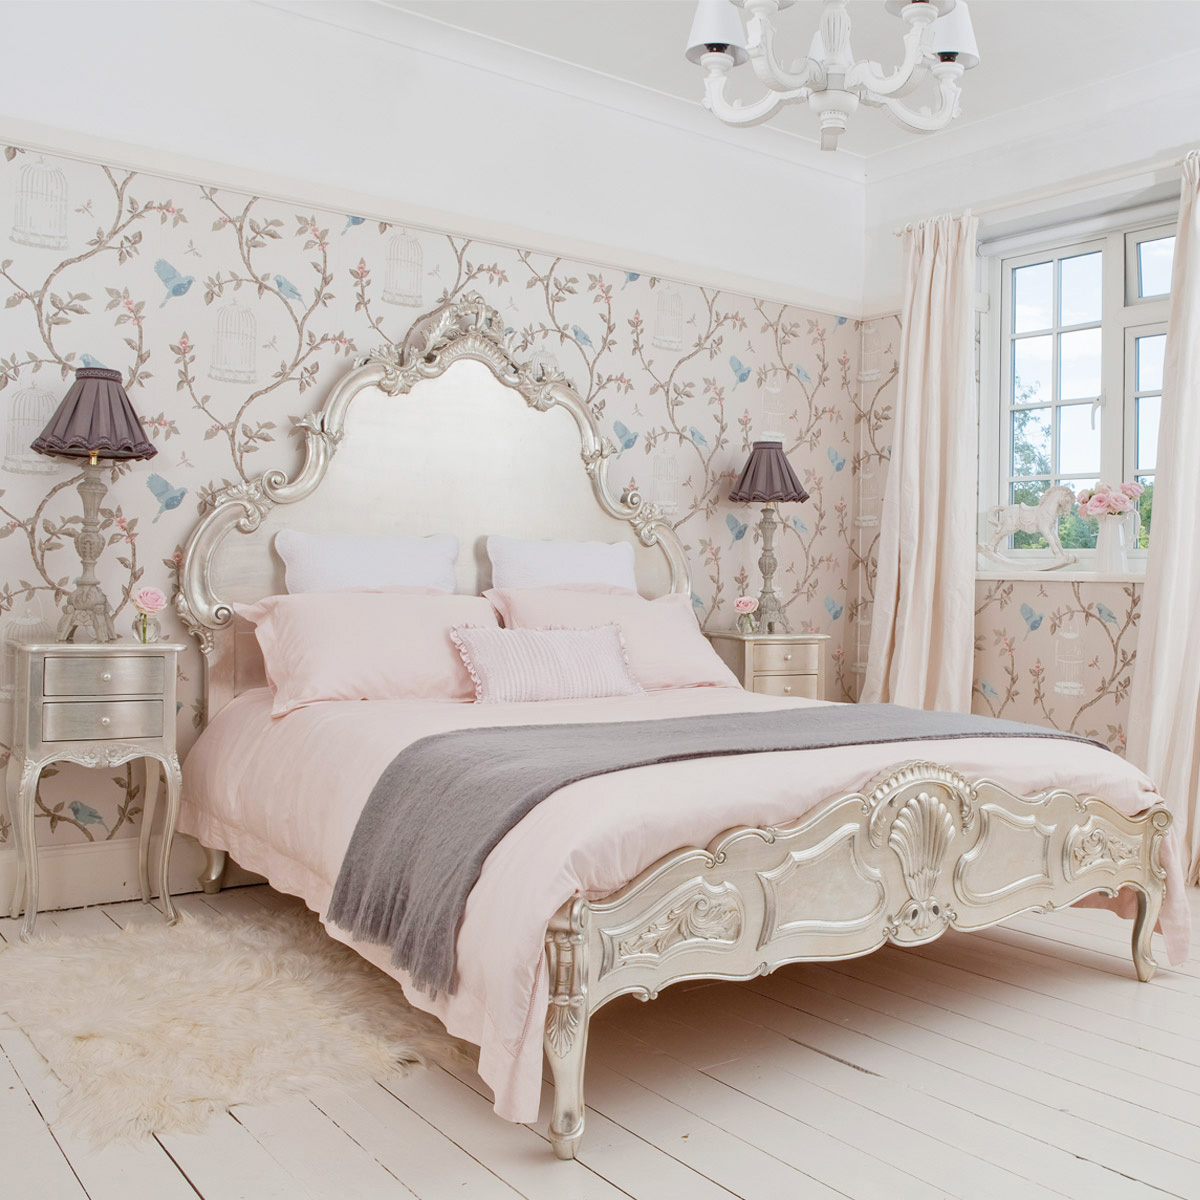 اجمل-تصميمات-ورق-الحائط-لغرف-النوم-2019